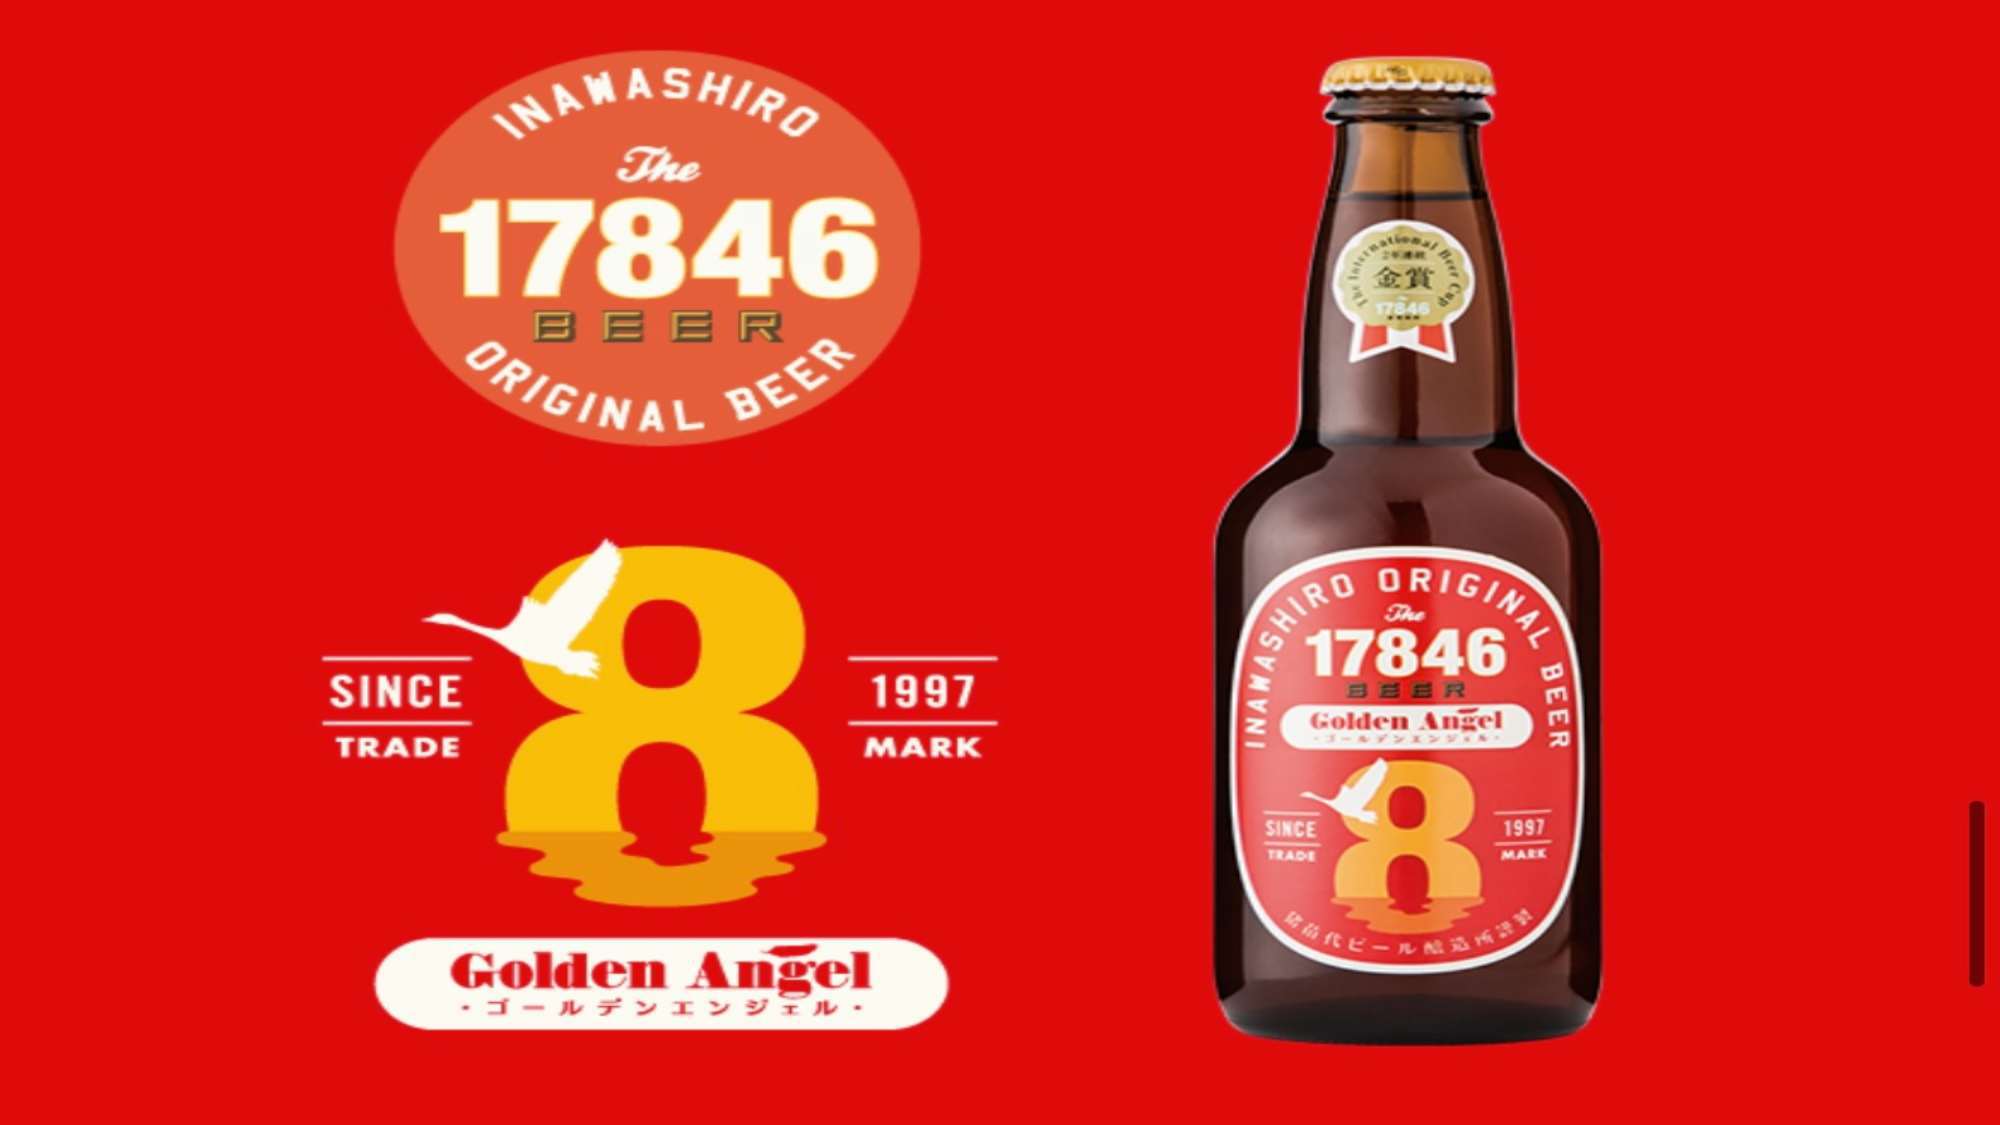 ・猪苗代地ビール ゴールデン・エンジェル：一般的なビールより赤みがかっており、香りが爽やかです。